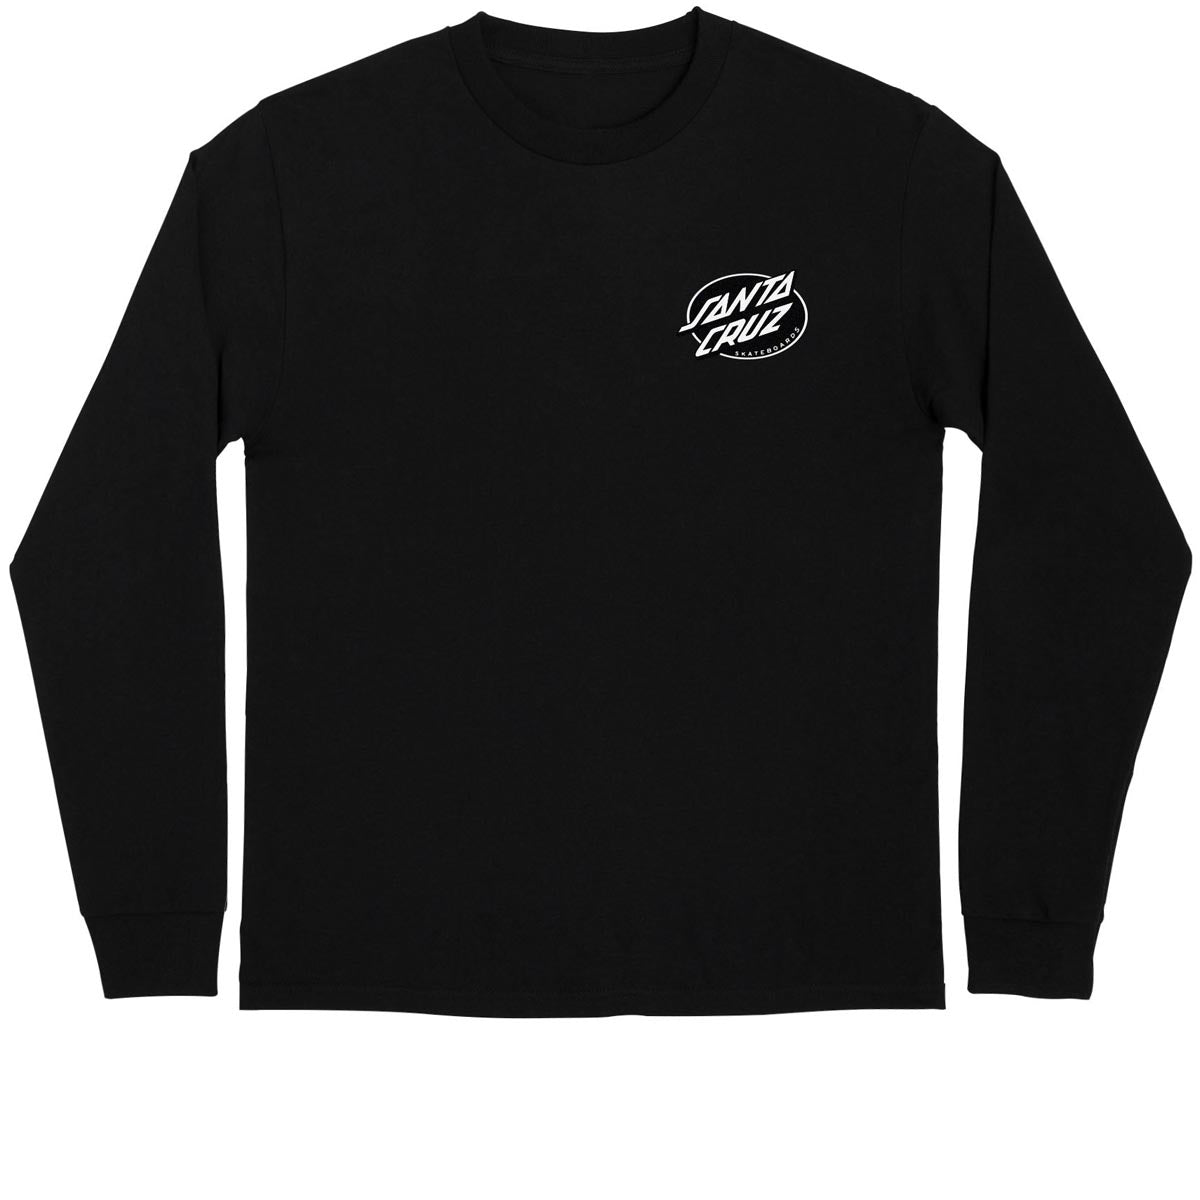 Santa Cruz Winkowski Vision Long Sleeve T-Shirt - Black image 2